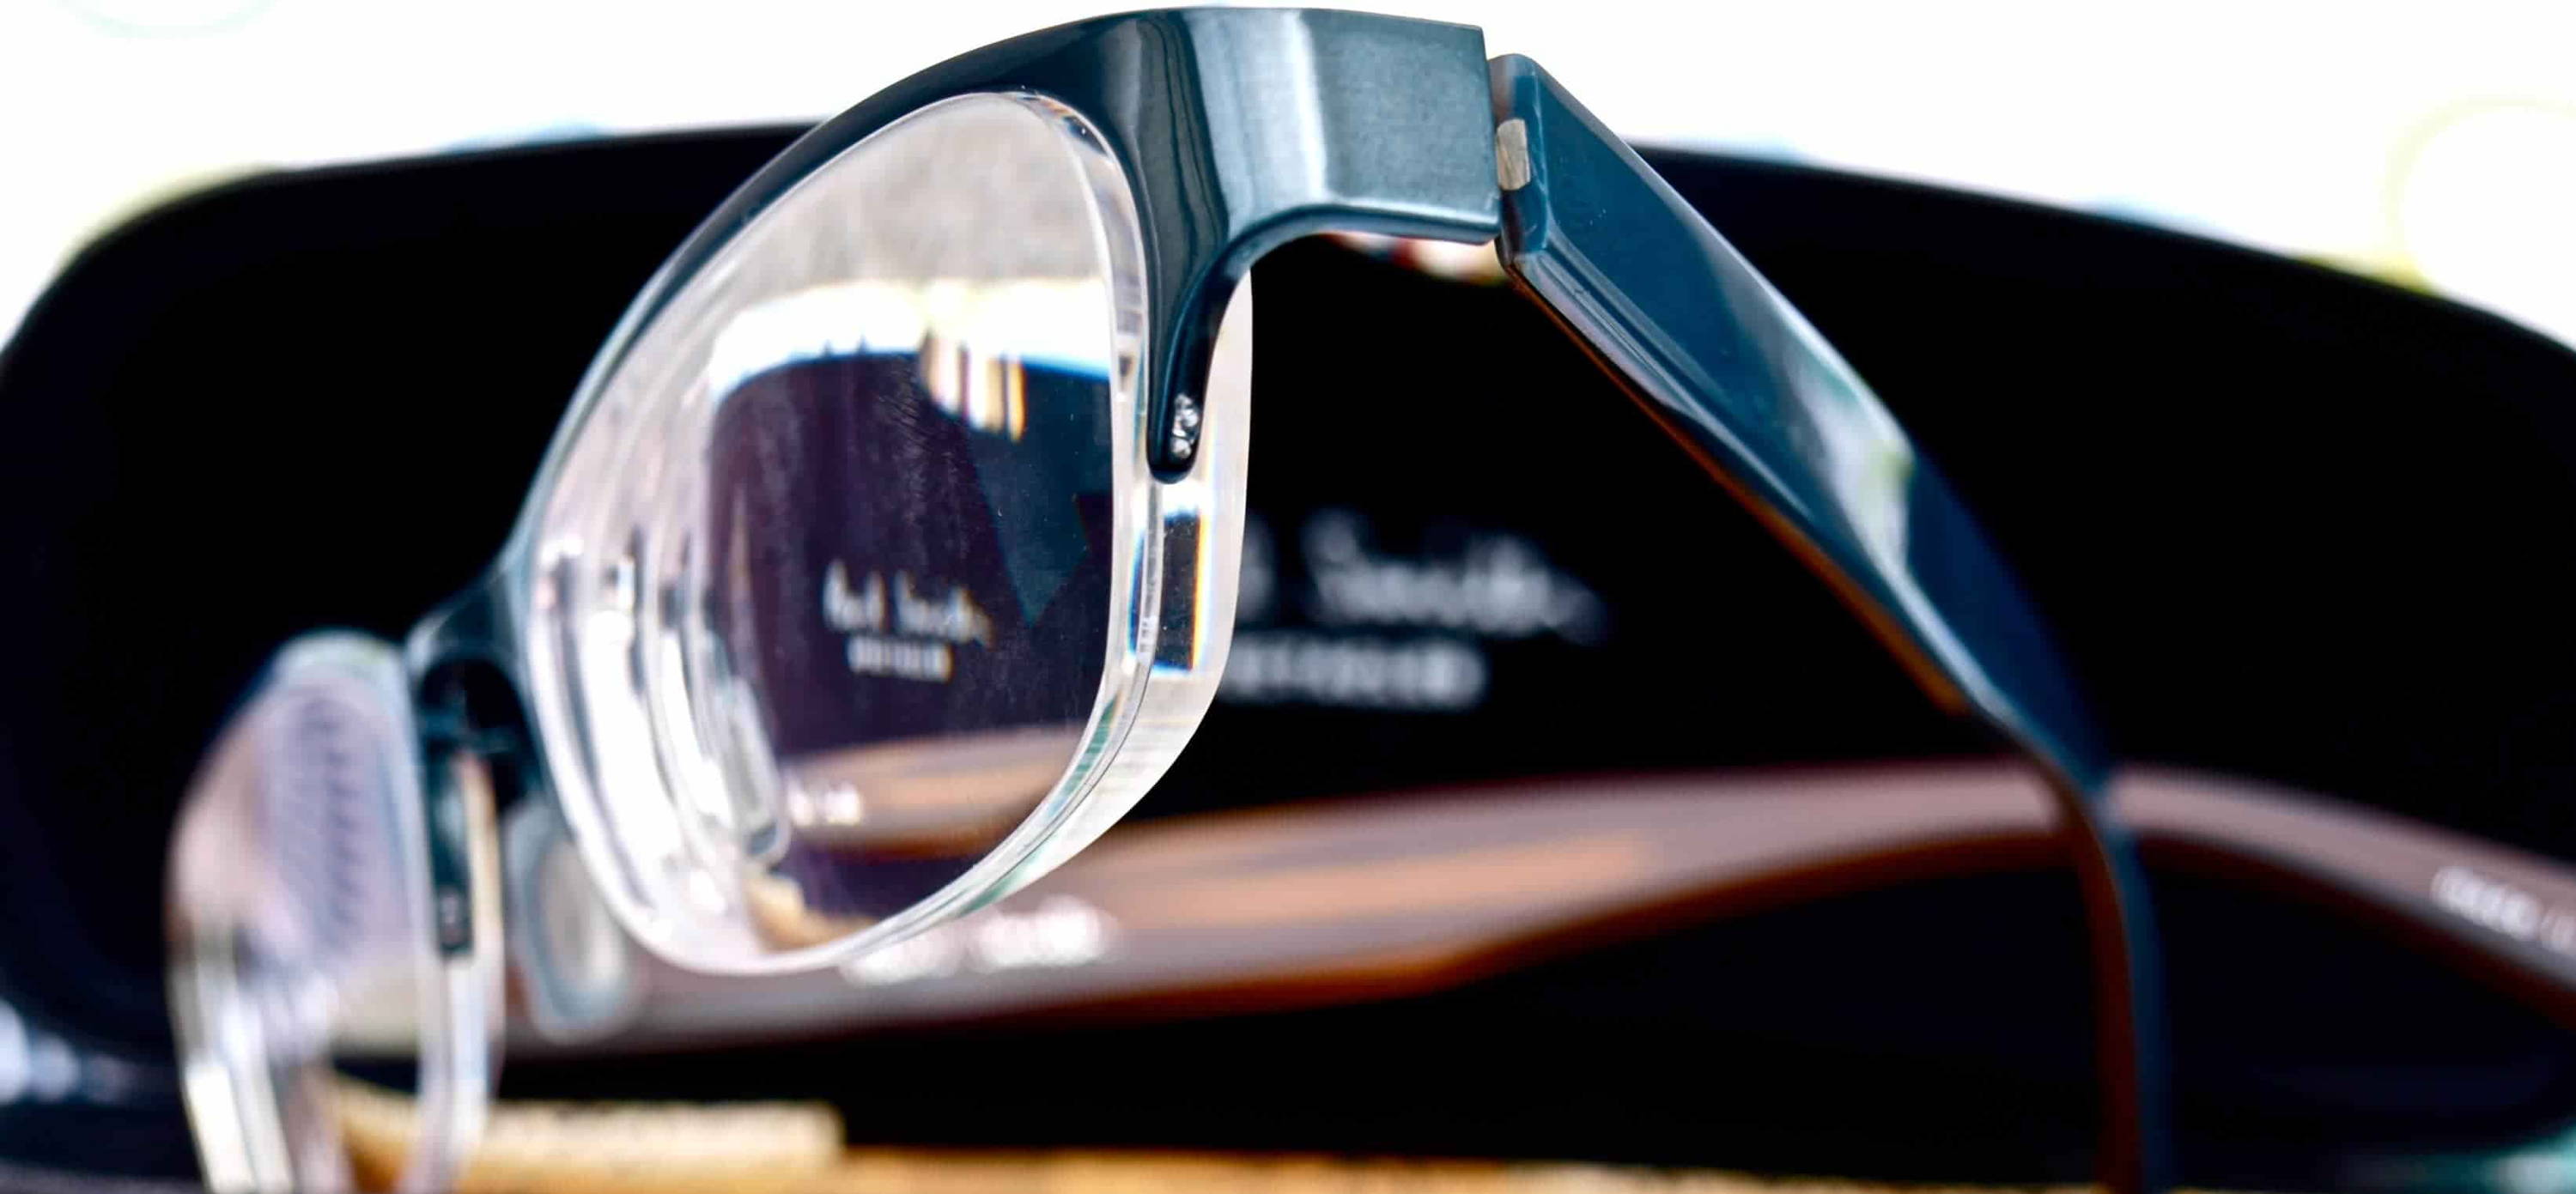 Formes de lunettes rectangulaires avec verres à indice élevé pour une prescription élevée